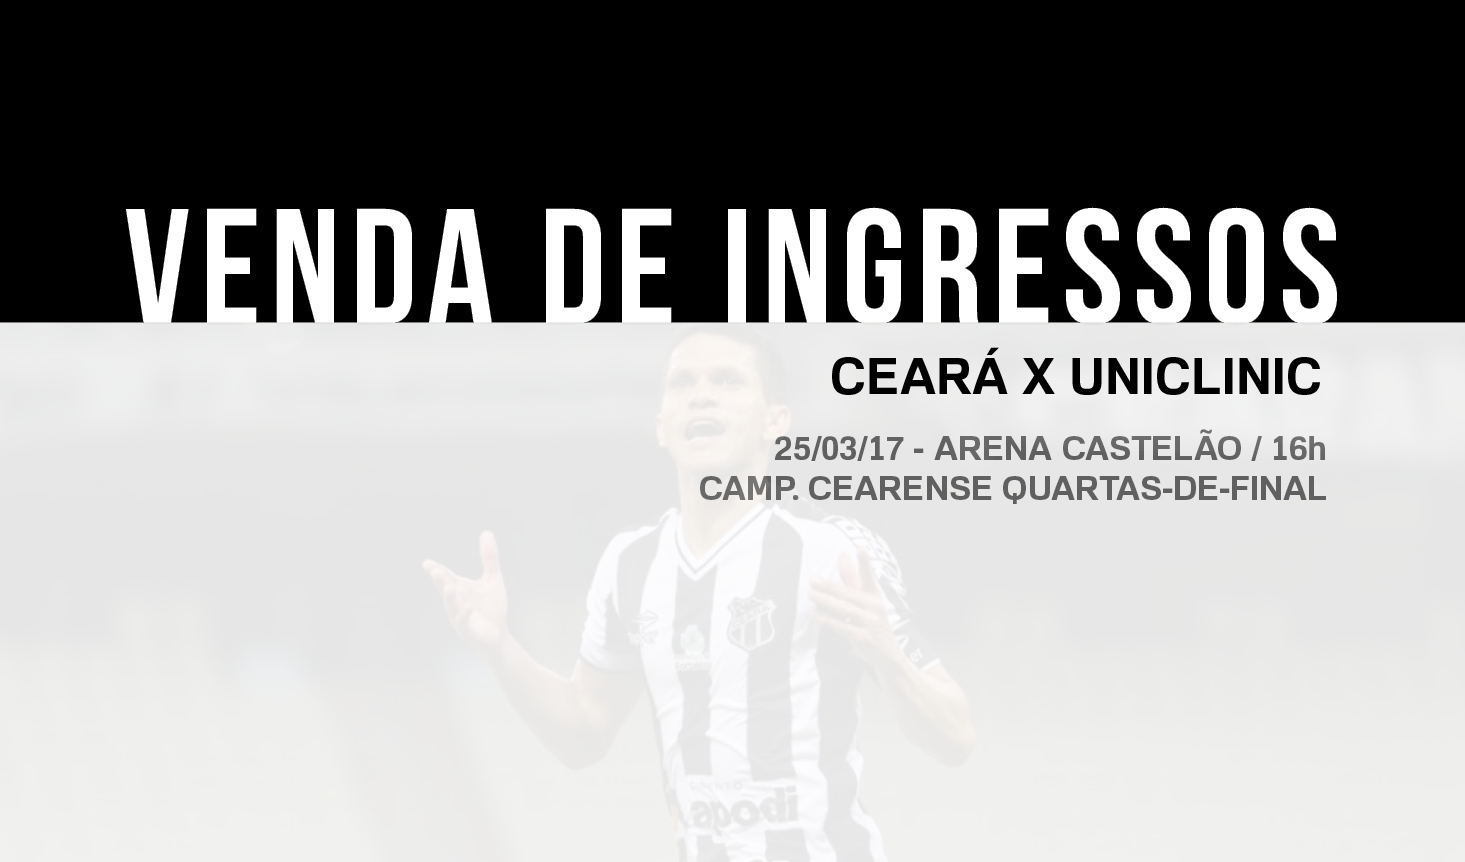 Ceará x Uniclinic: confira informações sobre a venda de ingressos